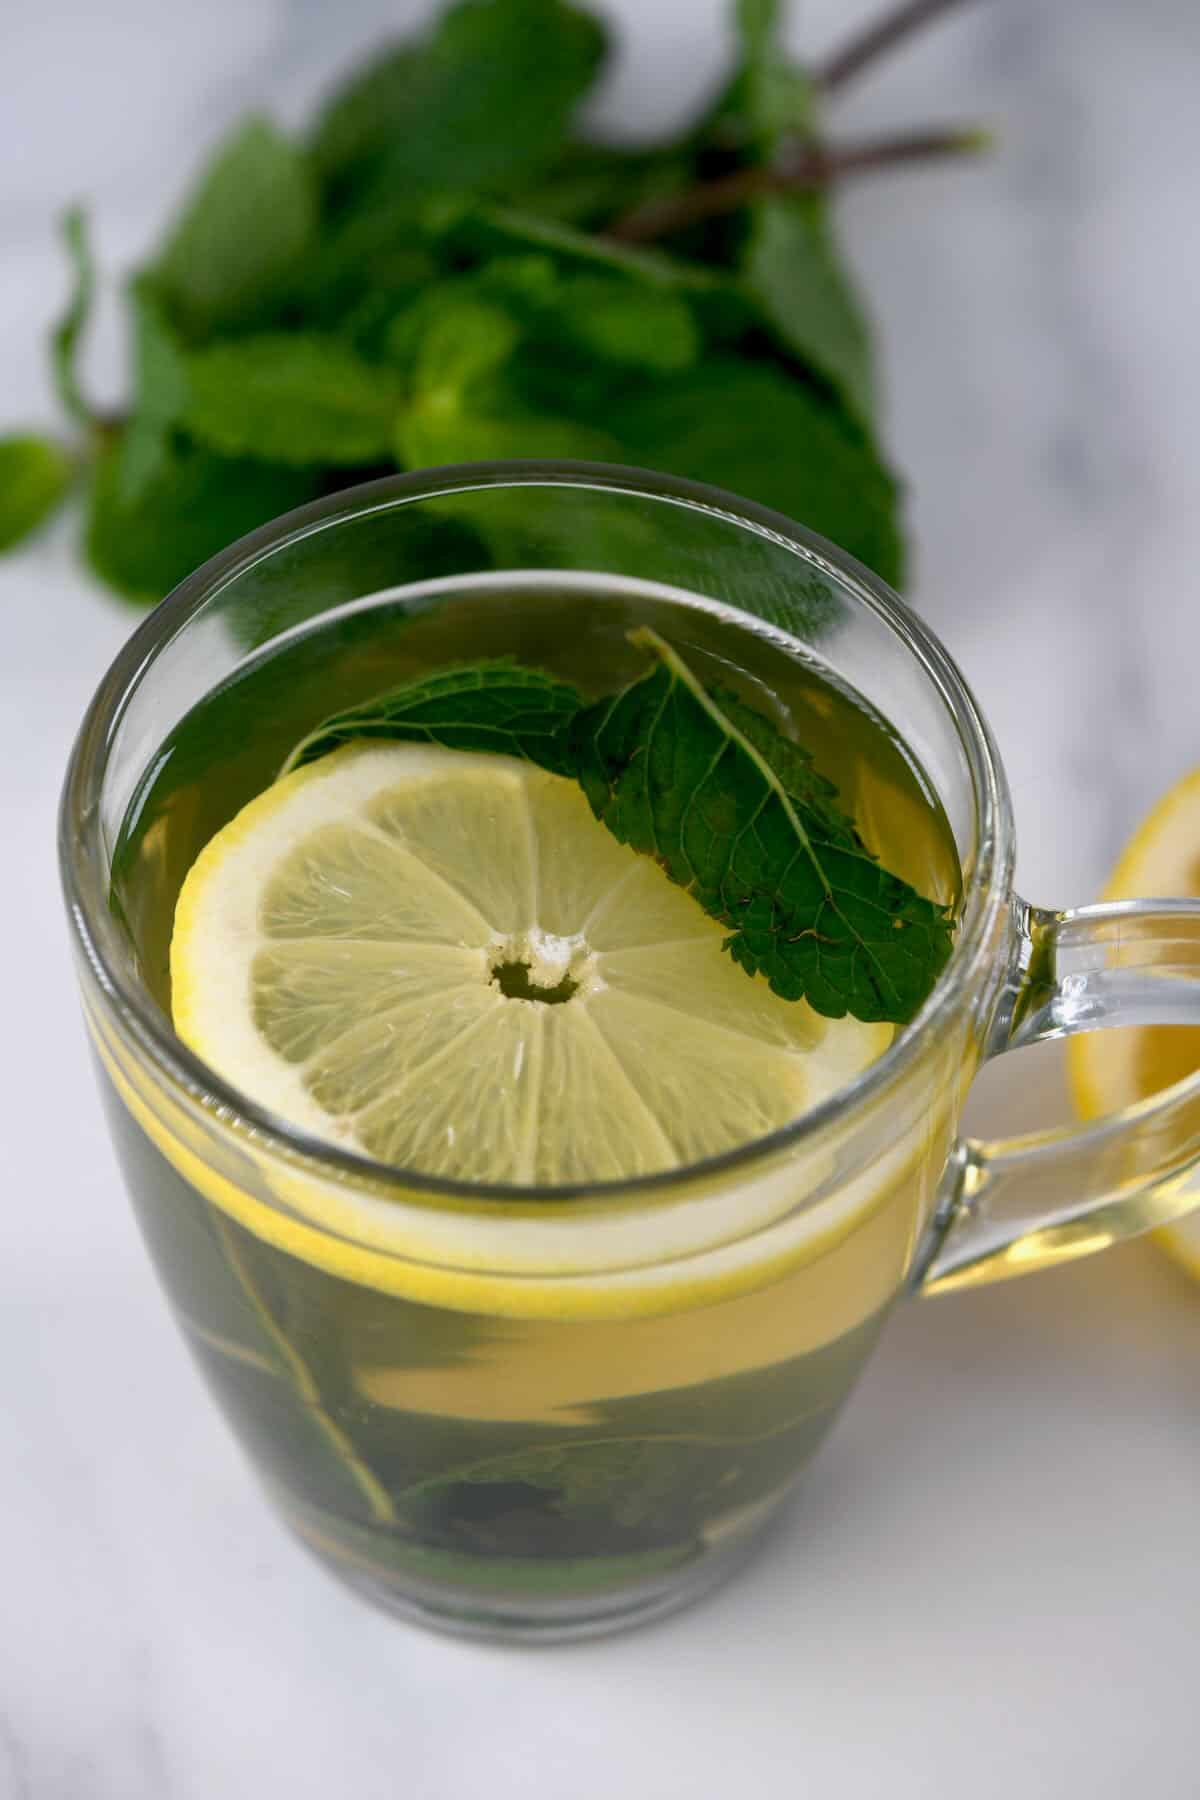 A glass with mint tea and lemon slice